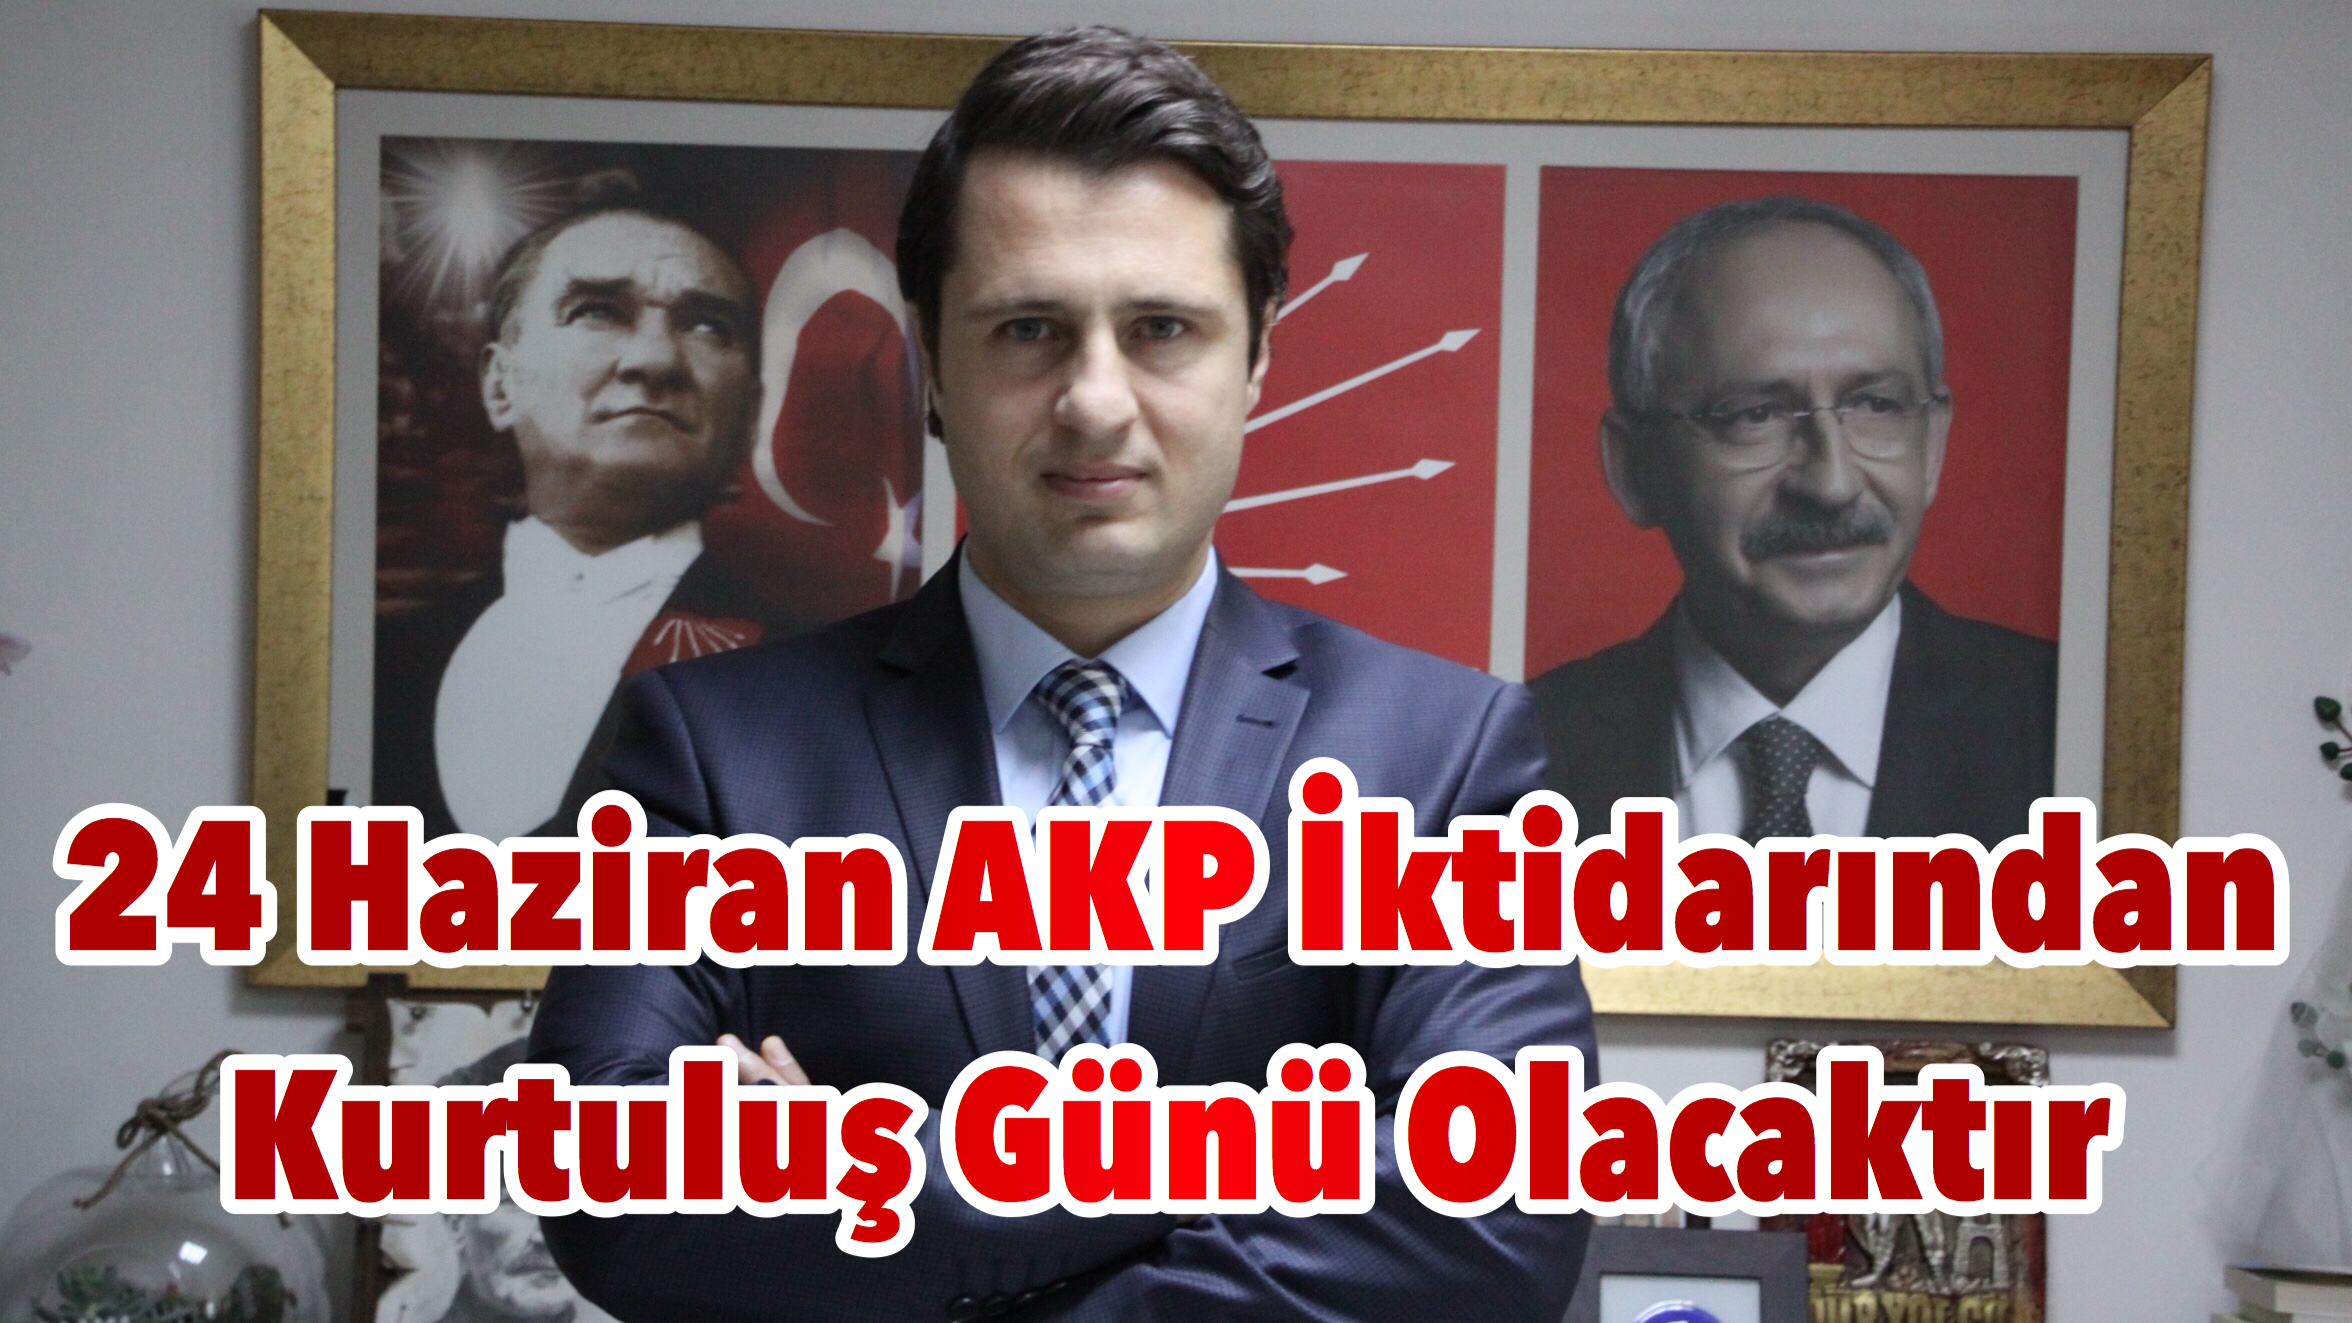 24 Haziran AKP İktidarından Kurtuluş Günü Olacaktır